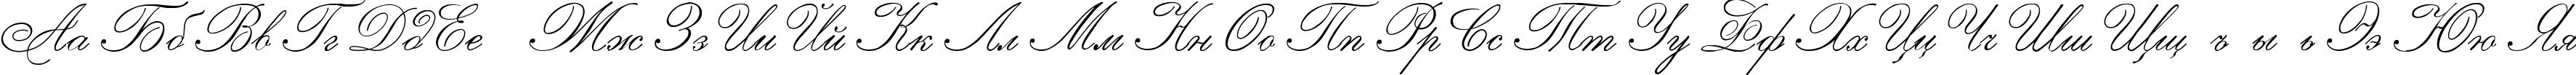 Пример написания русского алфавита шрифтом Imperial